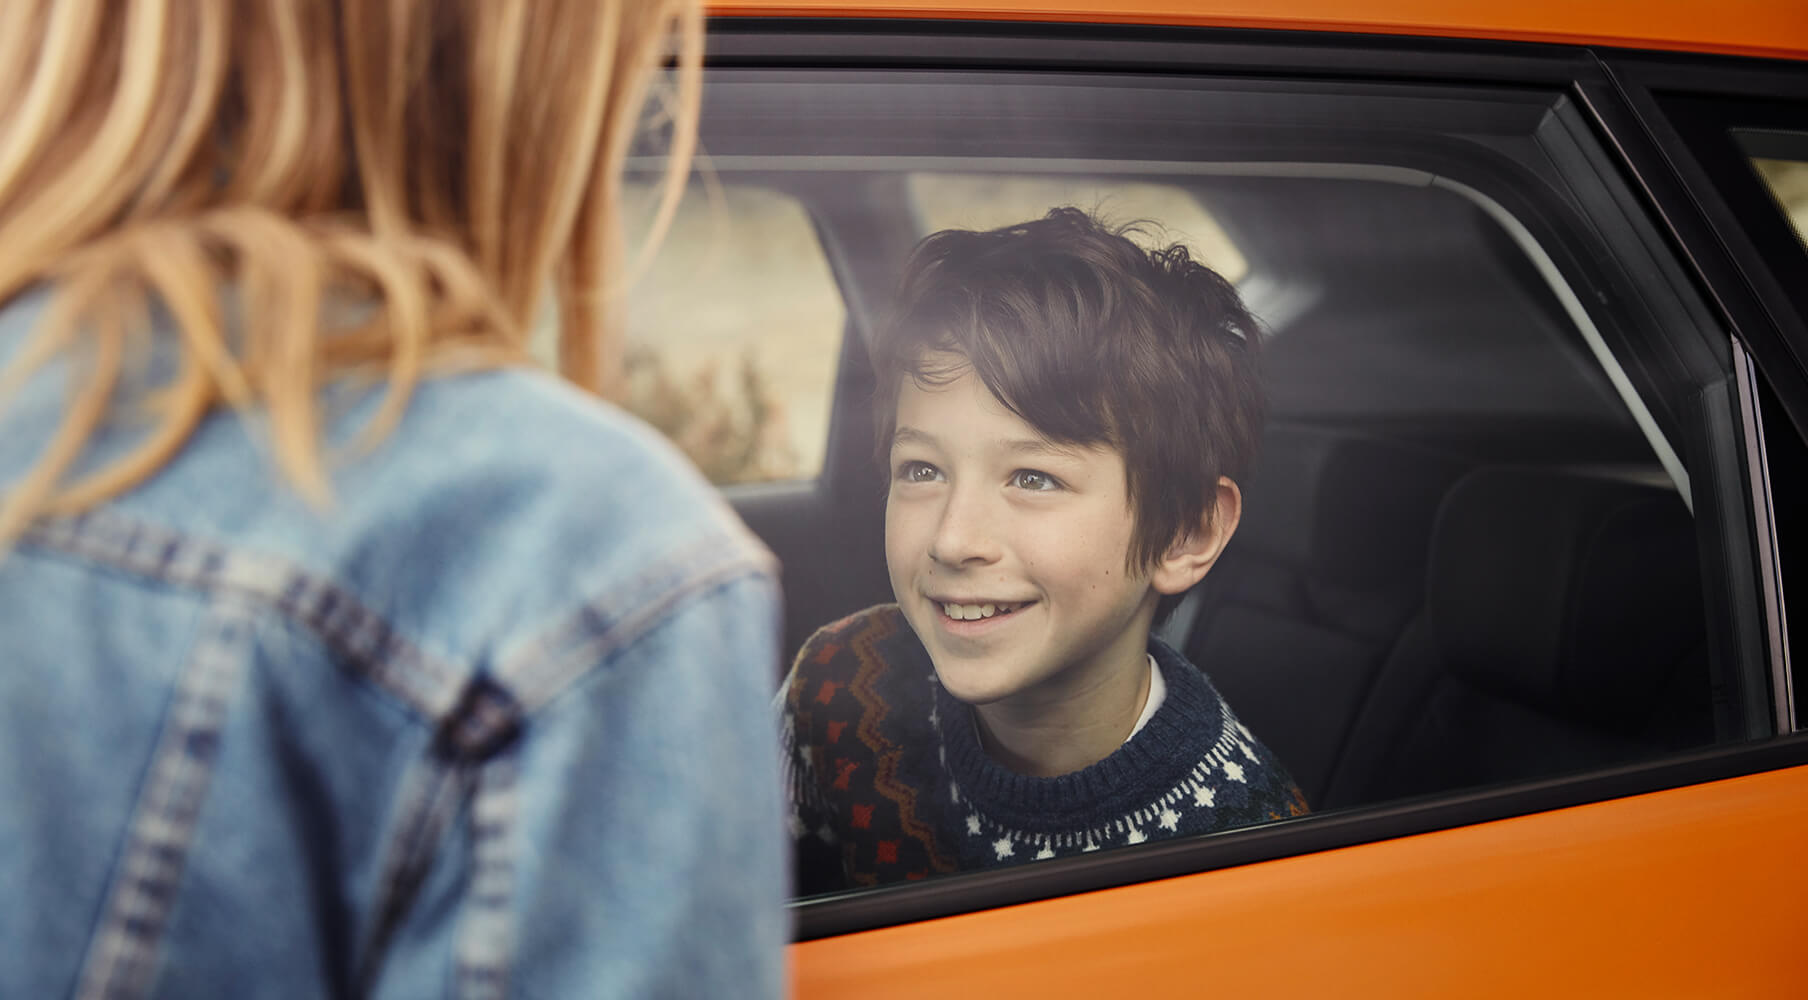 SEAT Serwis – przeglądy i konserwacja – chłopak uśmiechający się w samochodzie i kobieta stojąca na zewnątrz